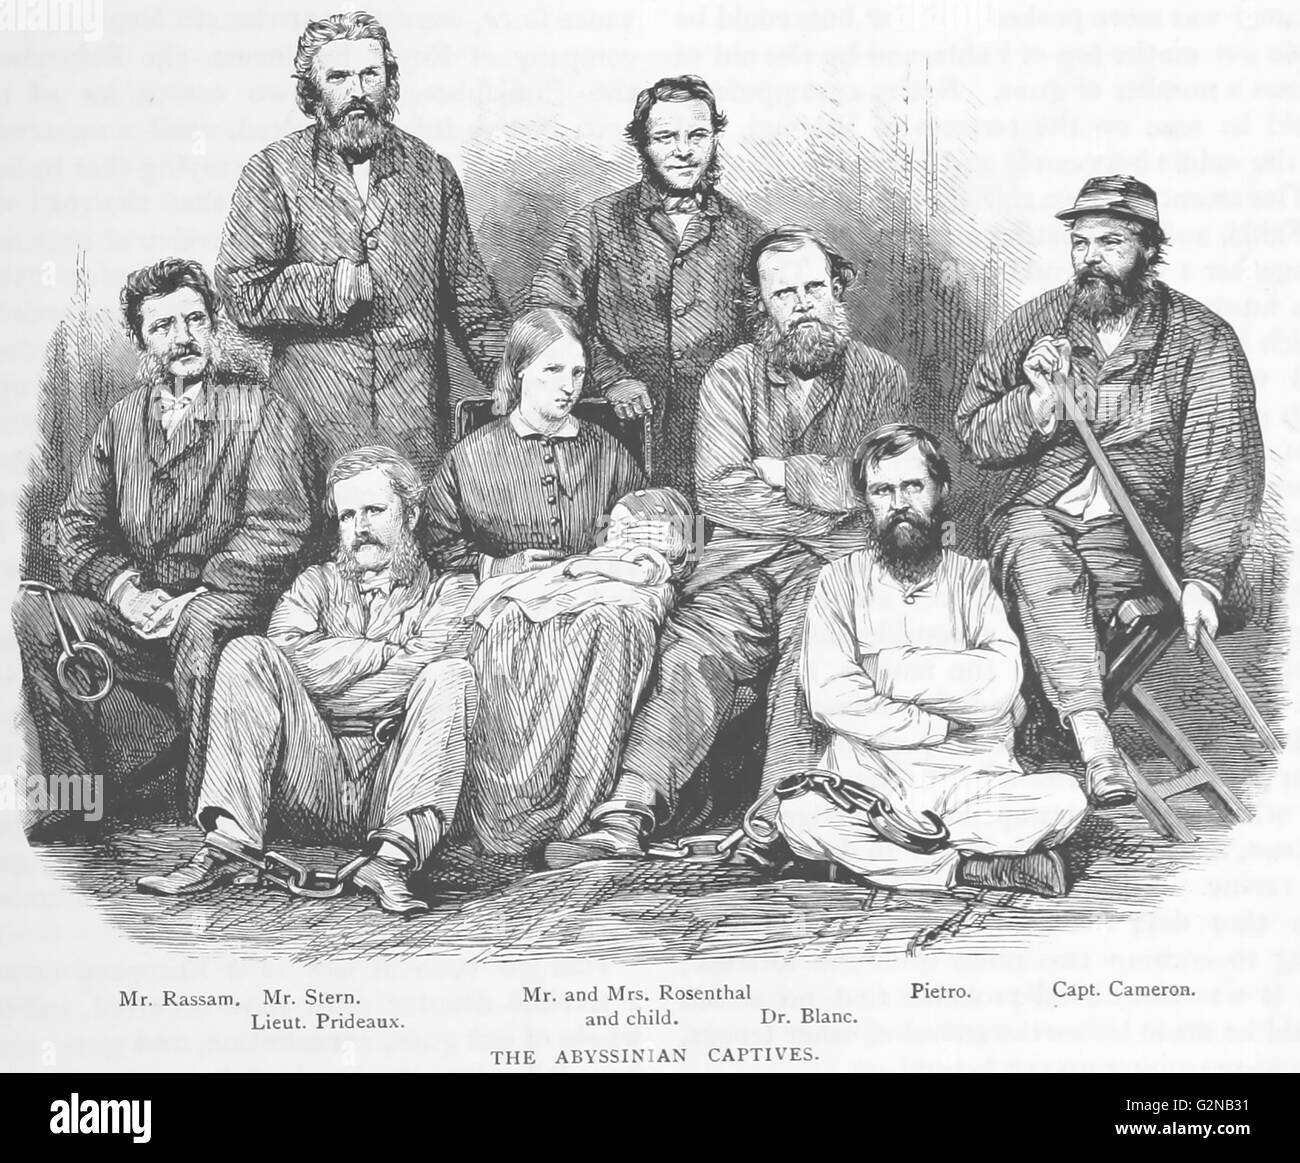 CHARLES DUNCAN CAMERON (1825-1870) britischer Offizier und Diplomat auf der rechten Seite während seiner Haft von Kaiser Tewodros II. von Äthiopien im Jahr 1864 Stockfoto